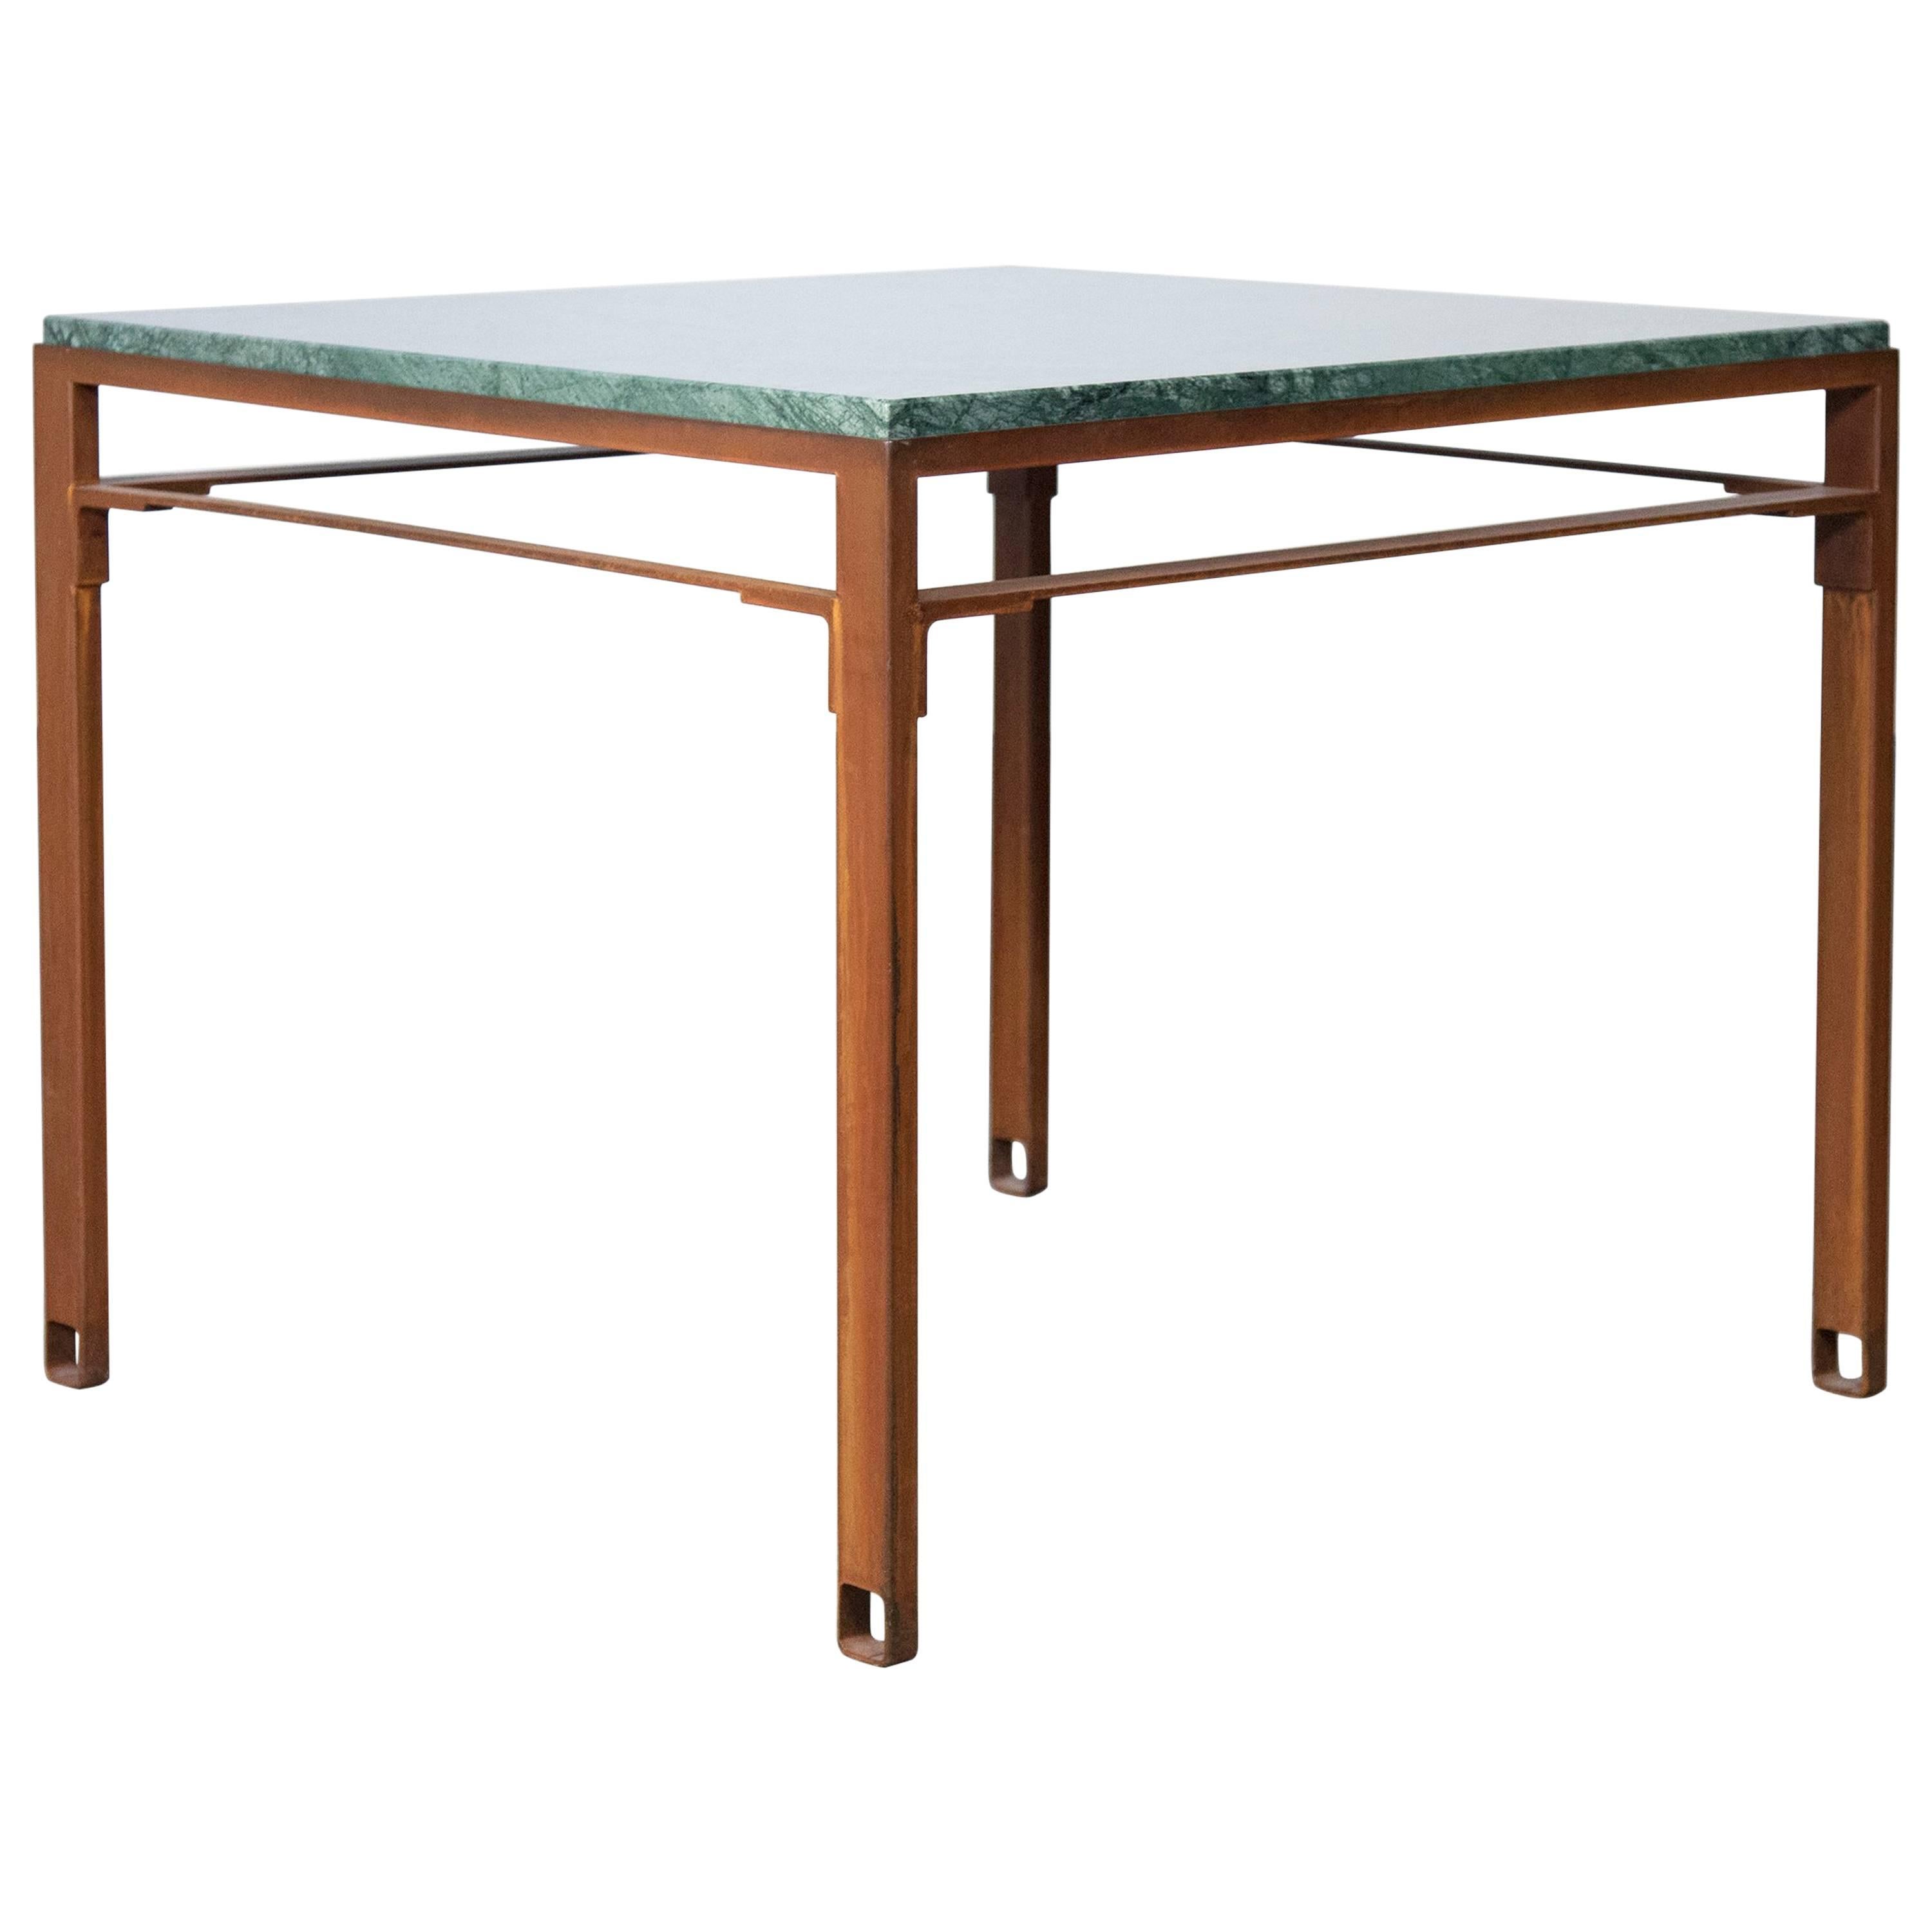 Table carrée en acier oxydé contemporain et marbre vert émeraude